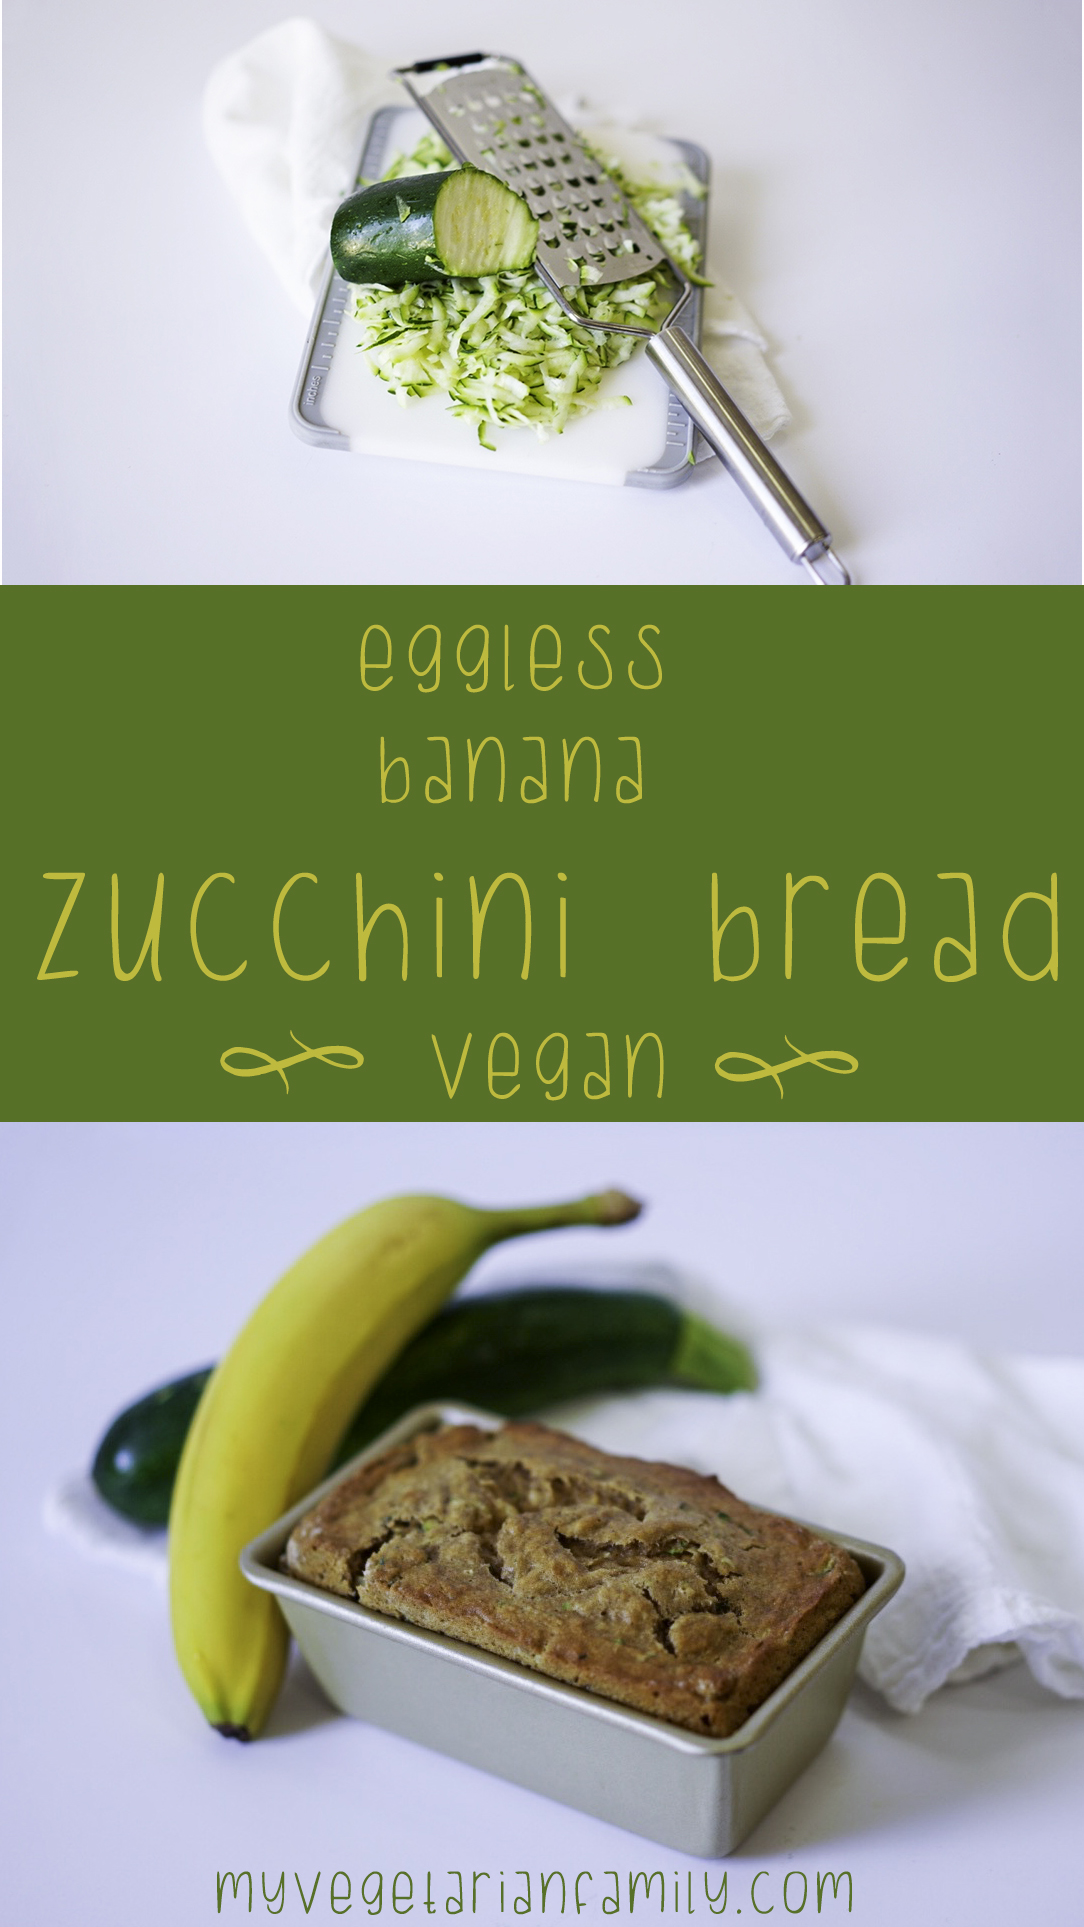 Eggless Banana Zucchini Bread | My Vegetarian Family #vegan #myvegetarianfamily